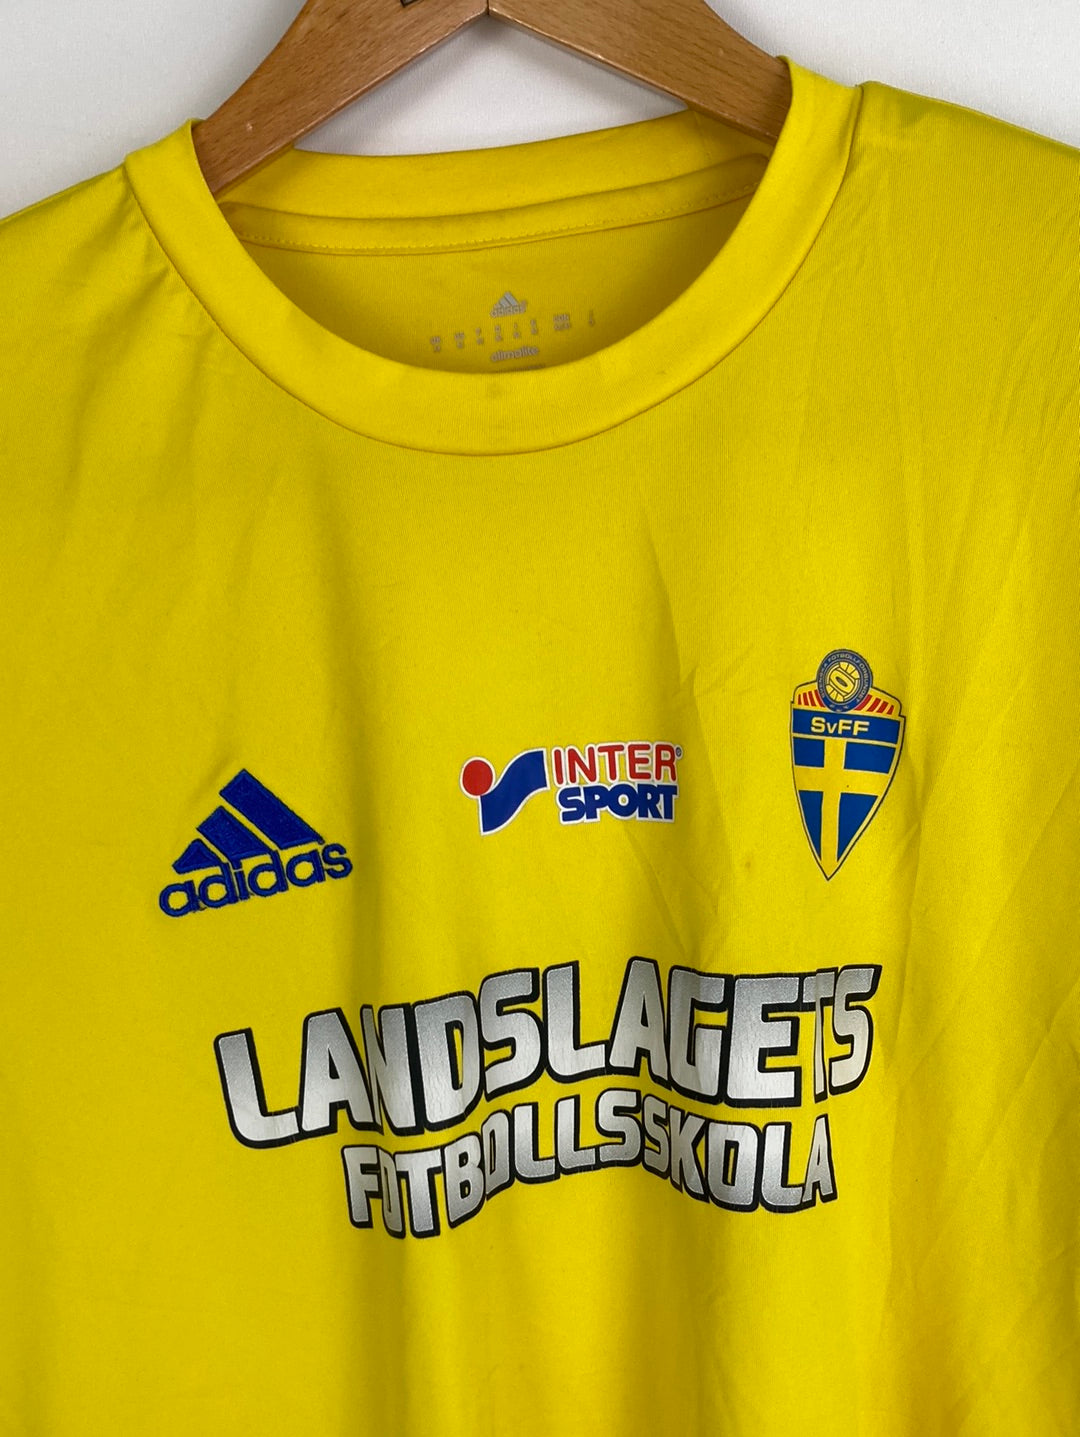 Adidas Schweden Trikot (L)